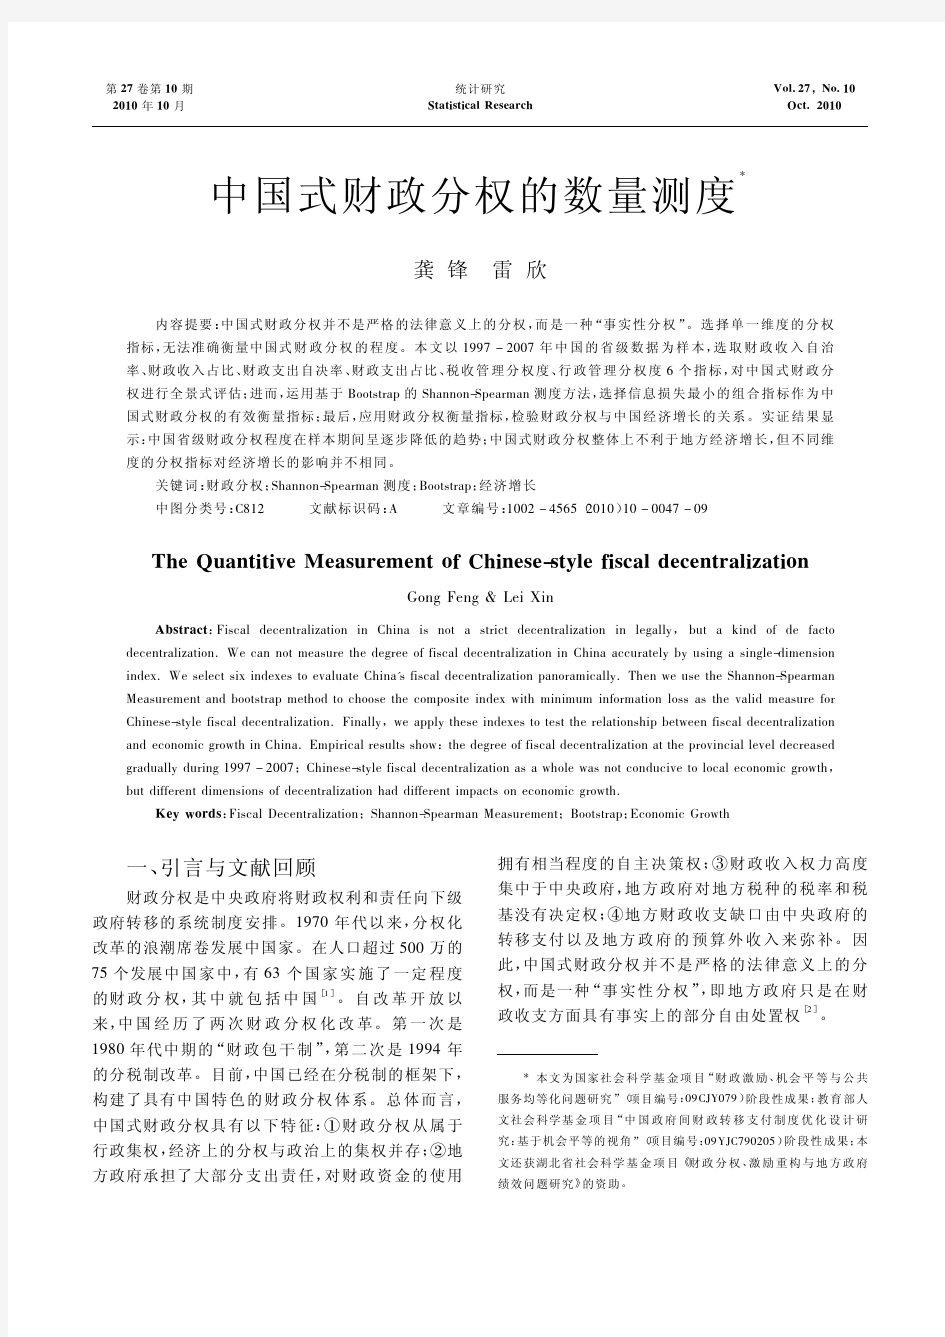 中国式财政分权的数量测度[1]